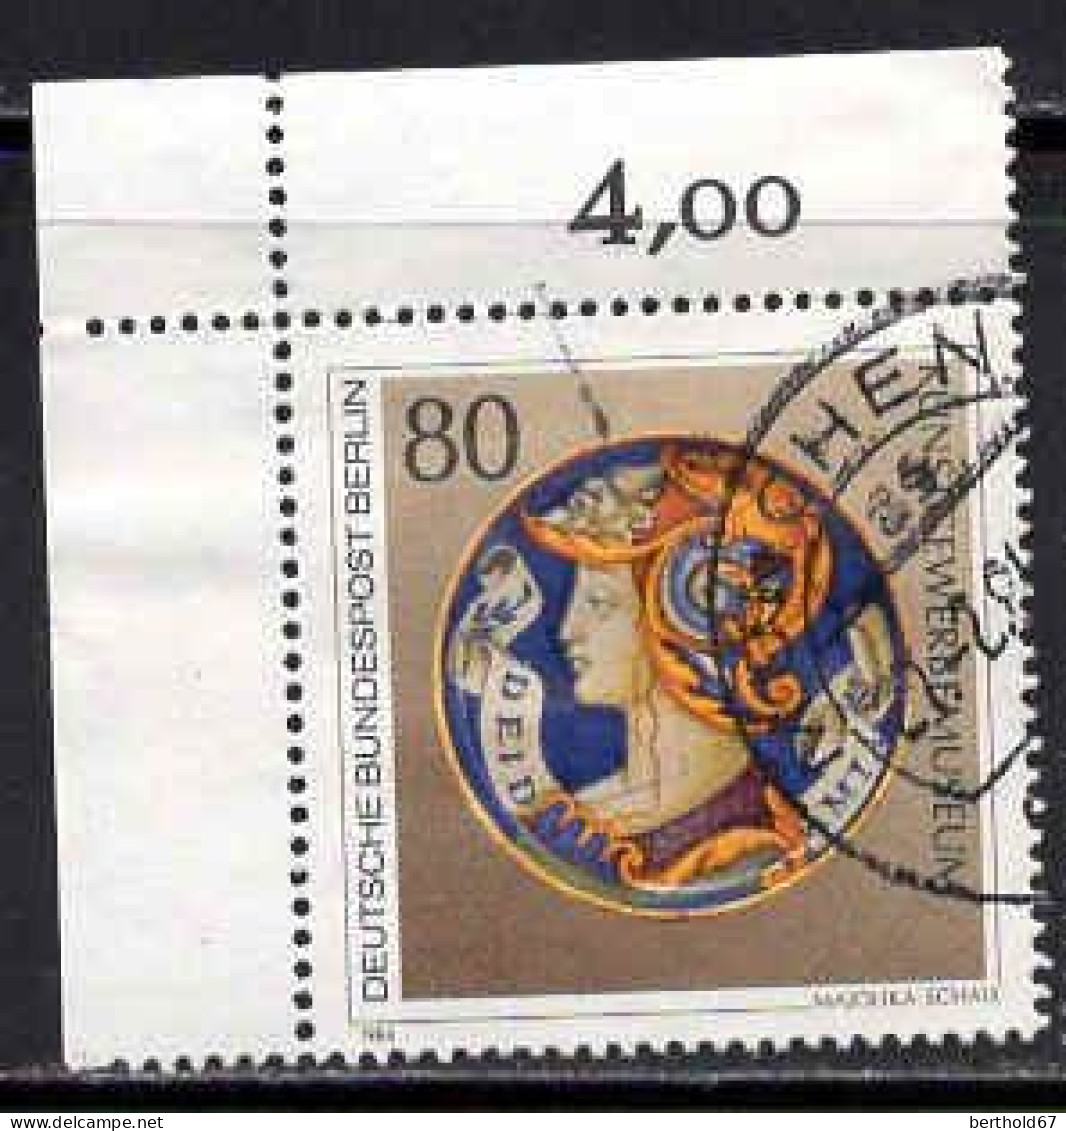 Berlin Poste Obl Yv:672 Mi:711 Majolika-Schale Coin De Feuille (TB Cachet Rond) - Oblitérés